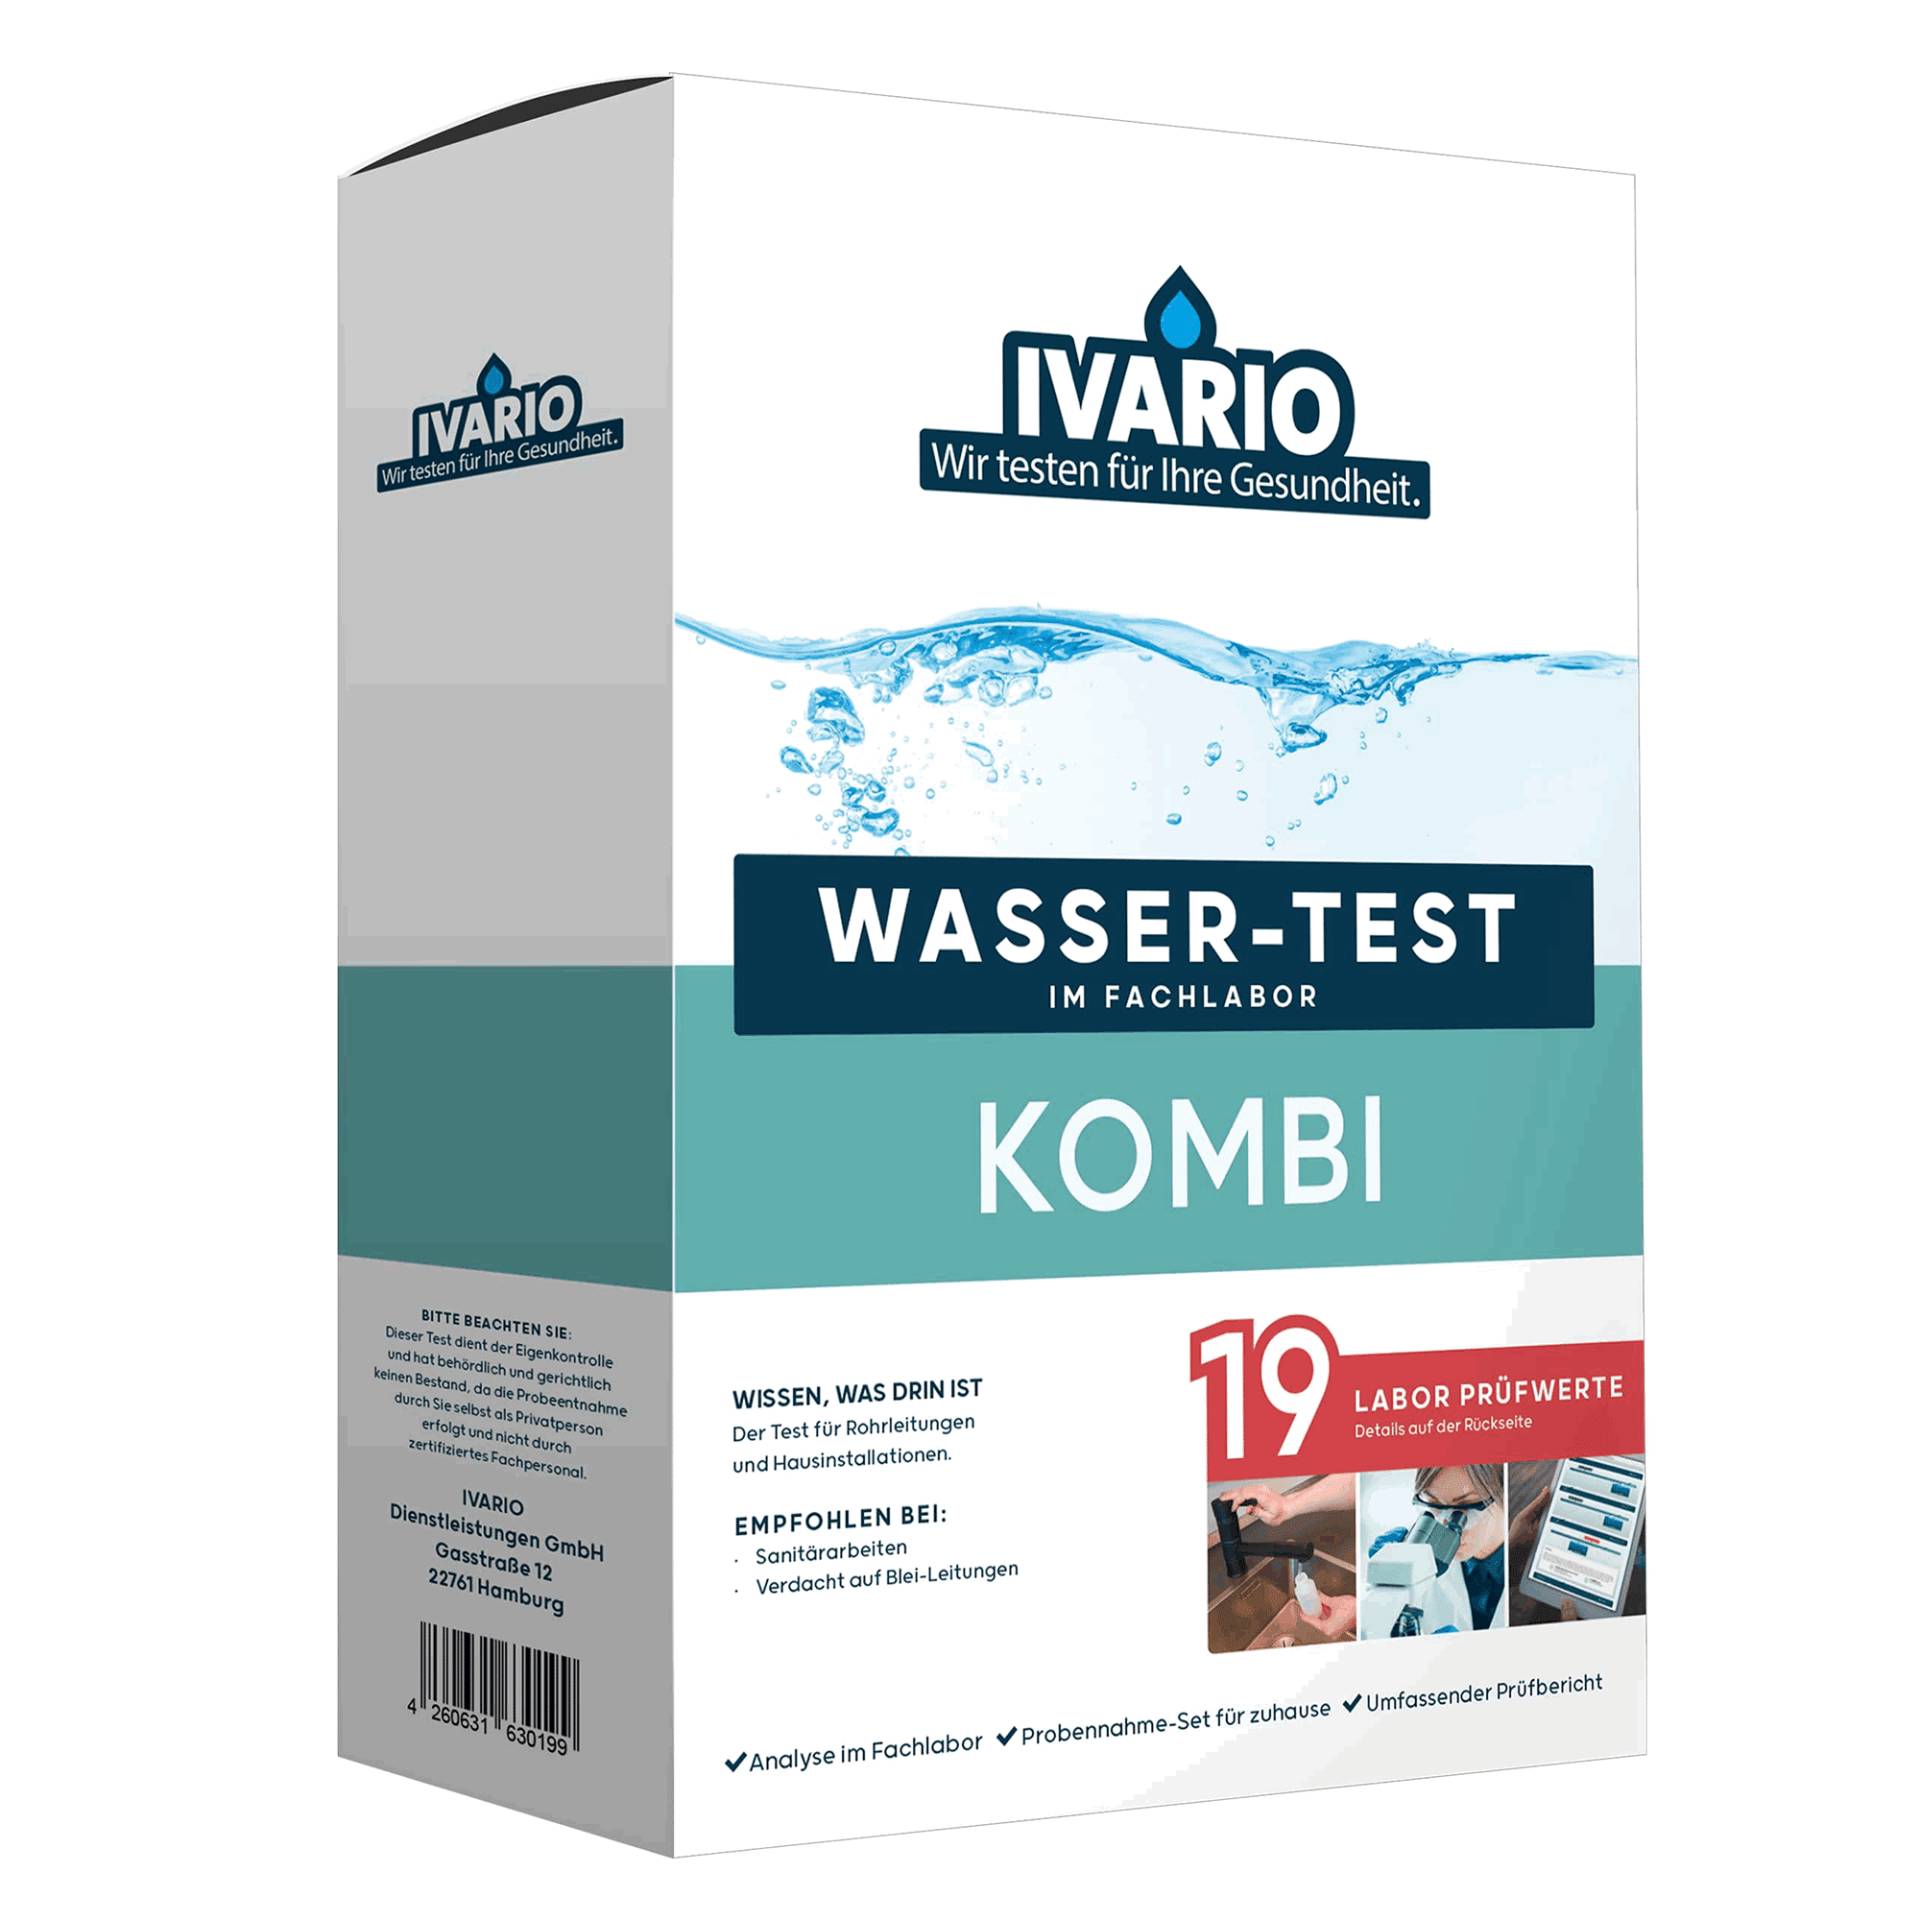 IVARIO Wassertest 'Kombi' 19 Prüfwerte von IVARIO